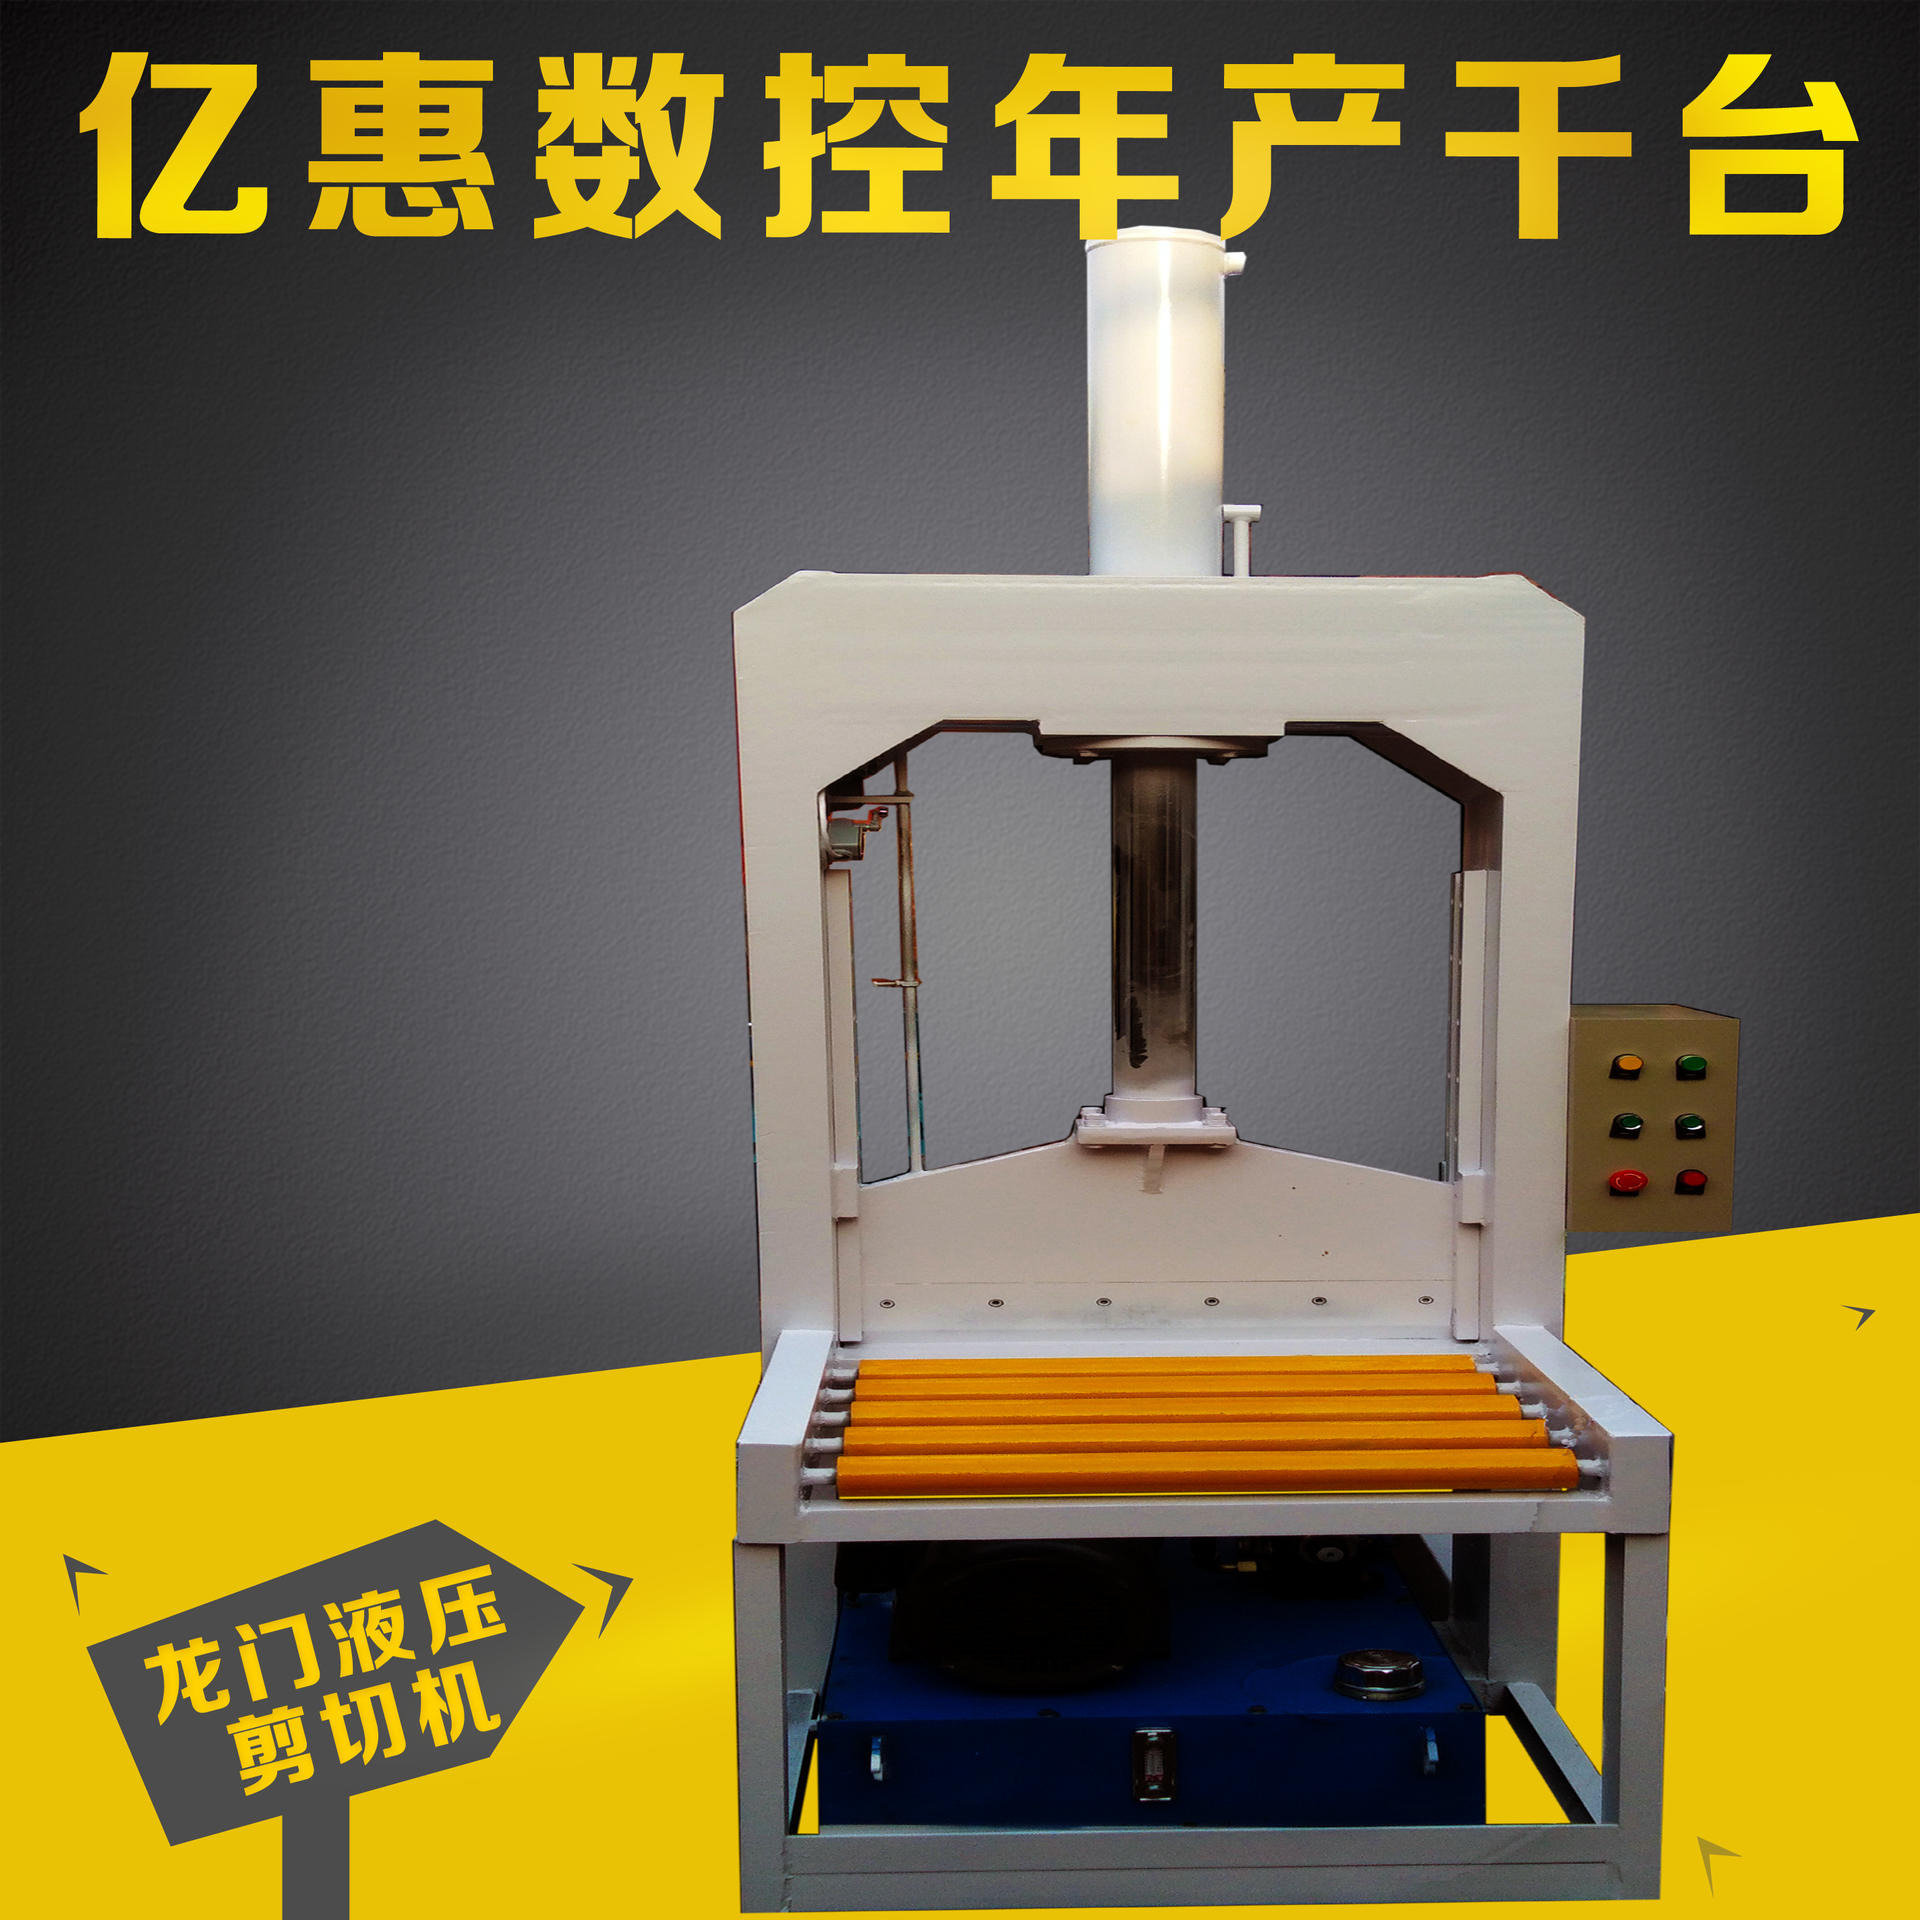 河北川洋专业供应 20吨液压切胶机  单刀切胶机  厂家直销